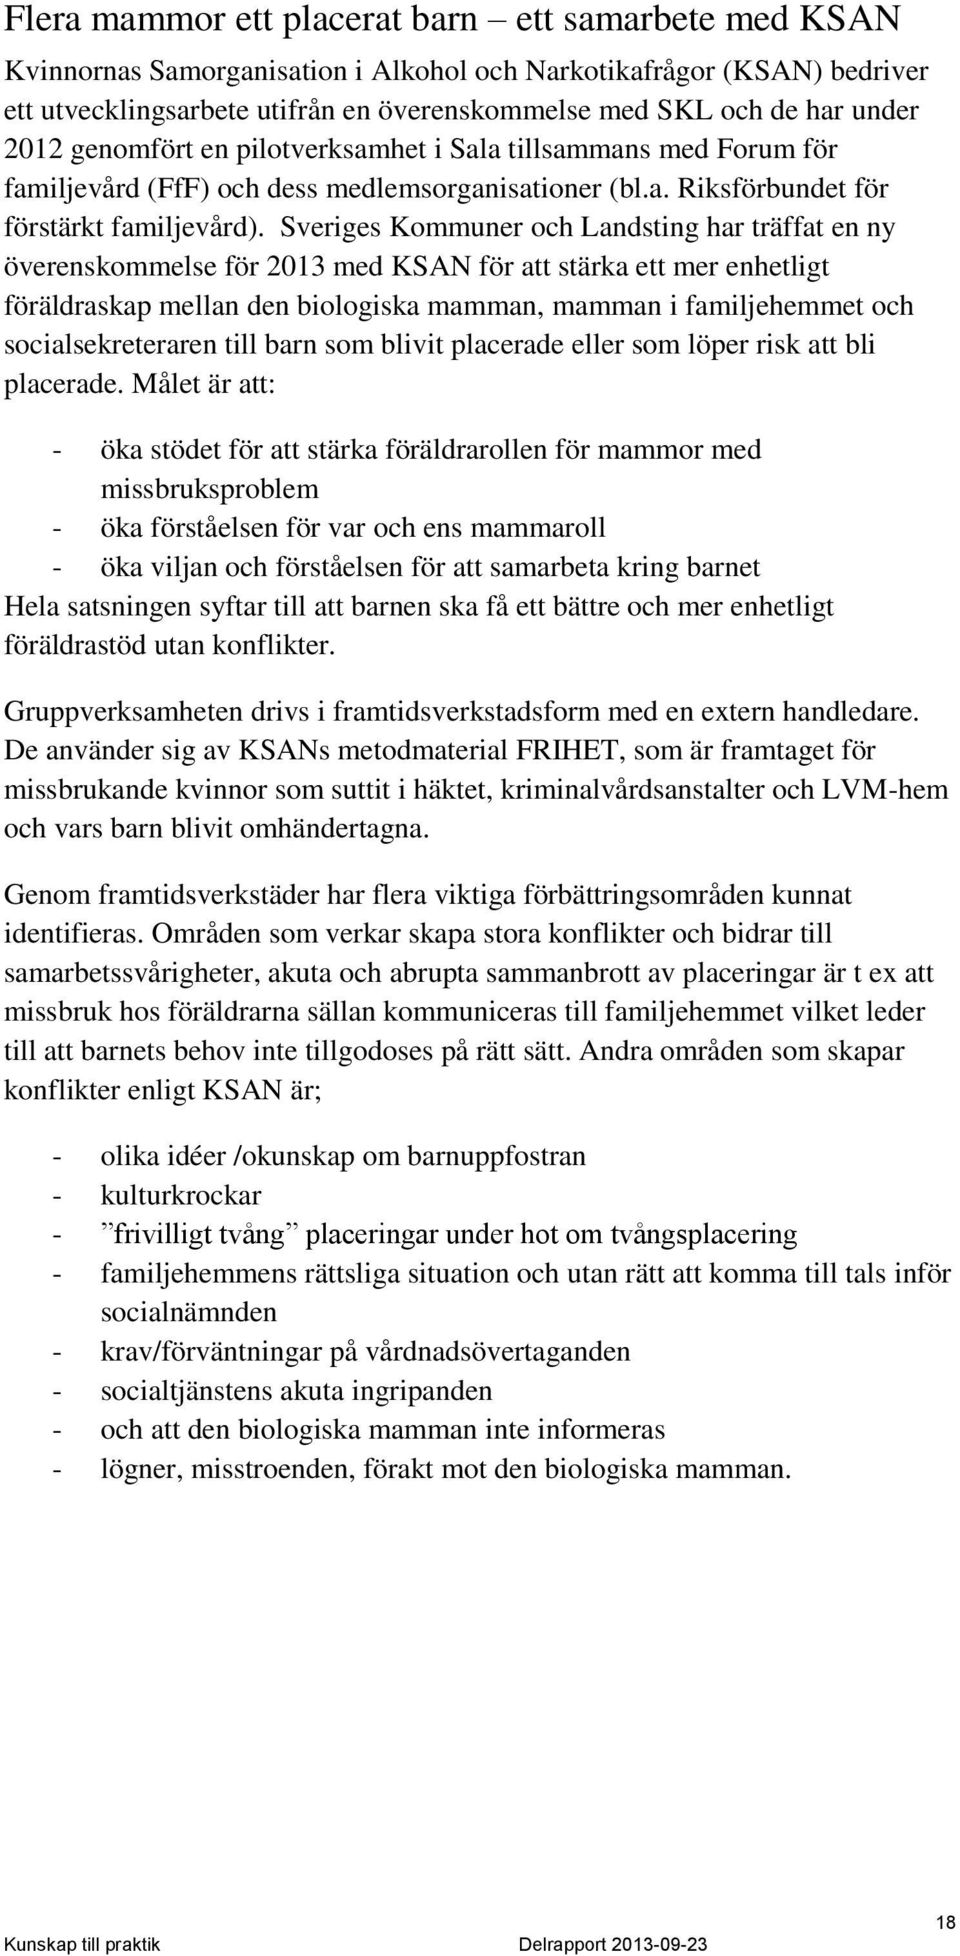 Sveriges Kommuner och Landsting har träffat en ny överenskommelse för 2013 med KSAN för att stärka ett mer enhetligt föräldraskap mellan den biologiska mamman, mamman i familjehemmet och